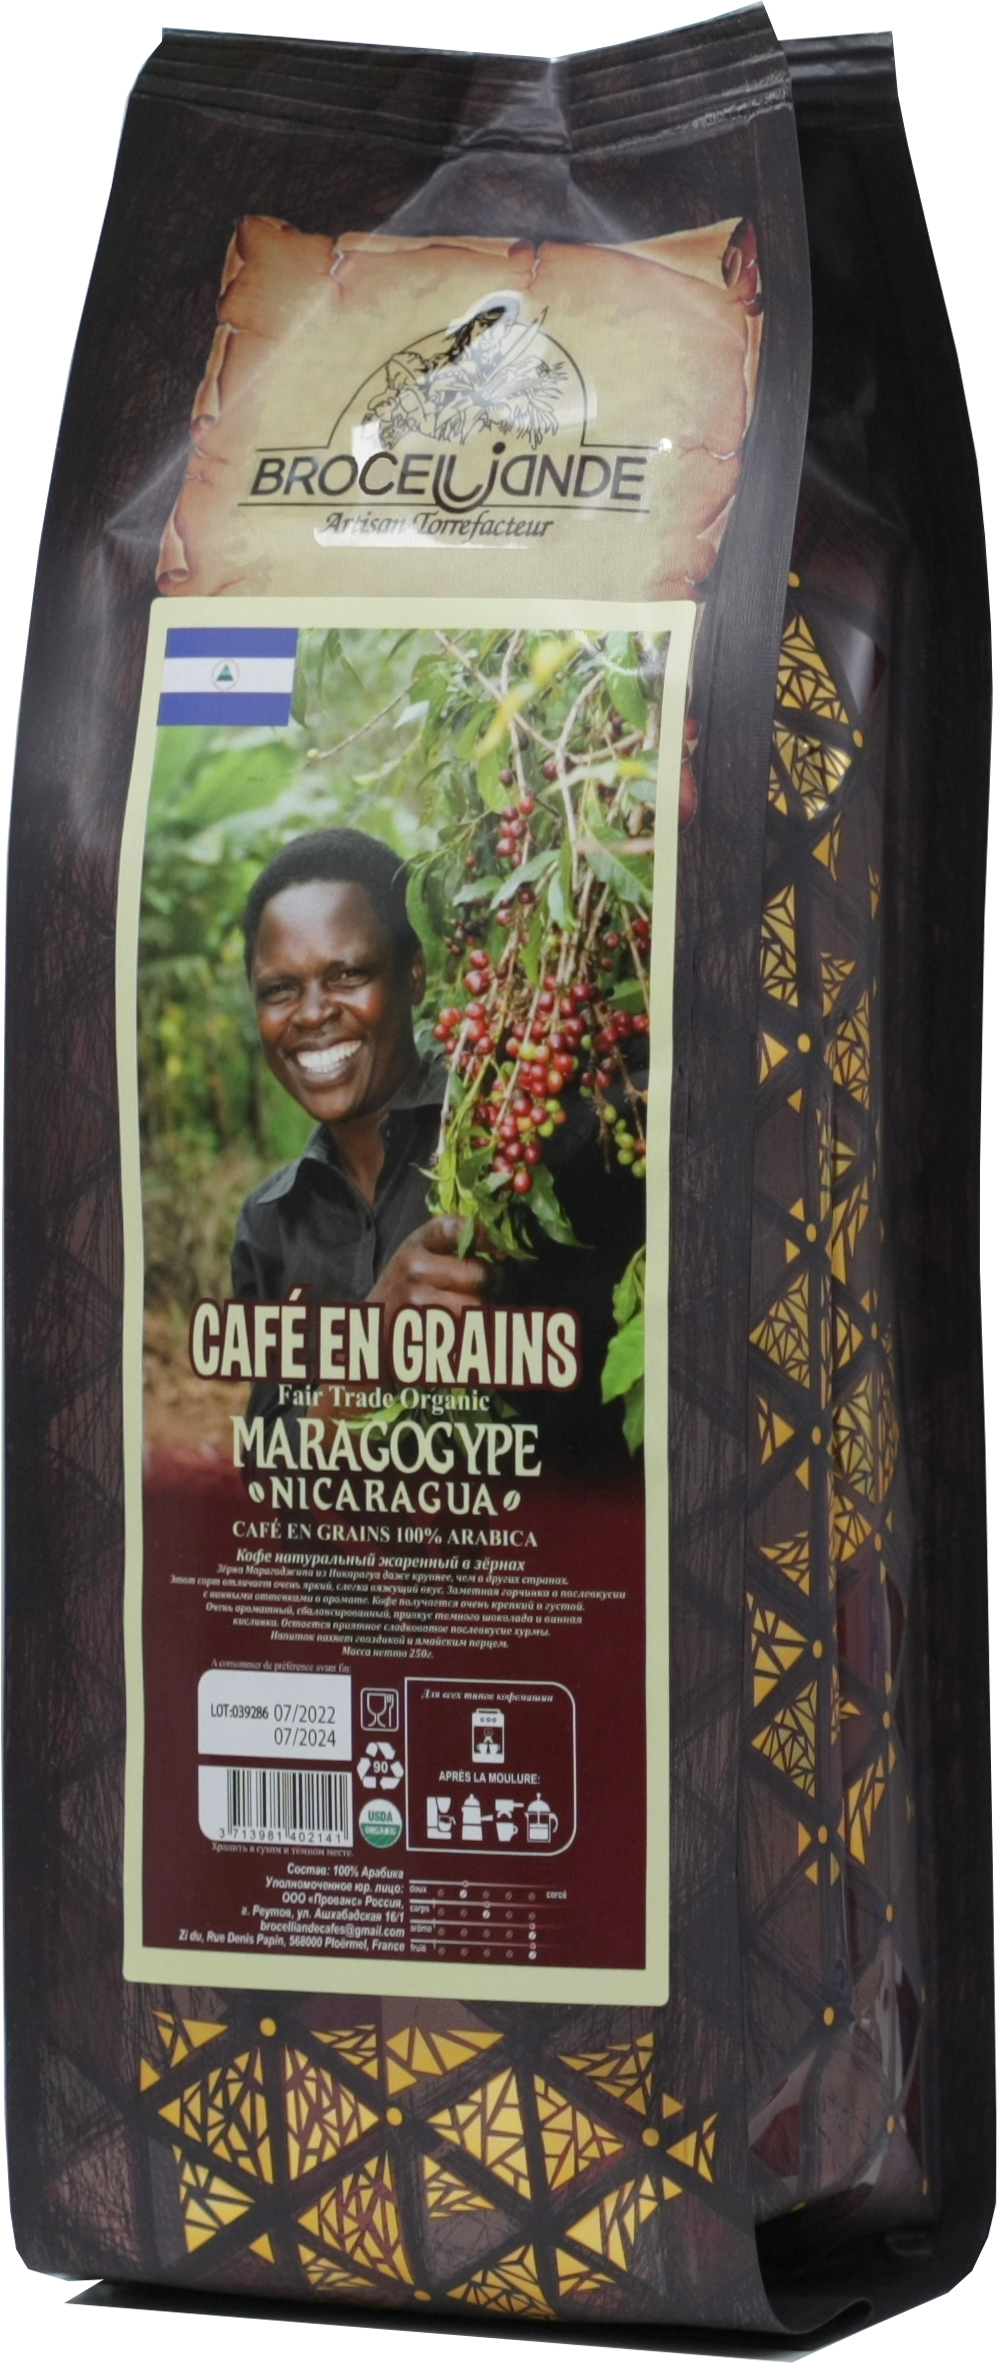 CAFE DE BROCELIANDE. Nicaragua зерновой 250 гр. мягкая упаковка